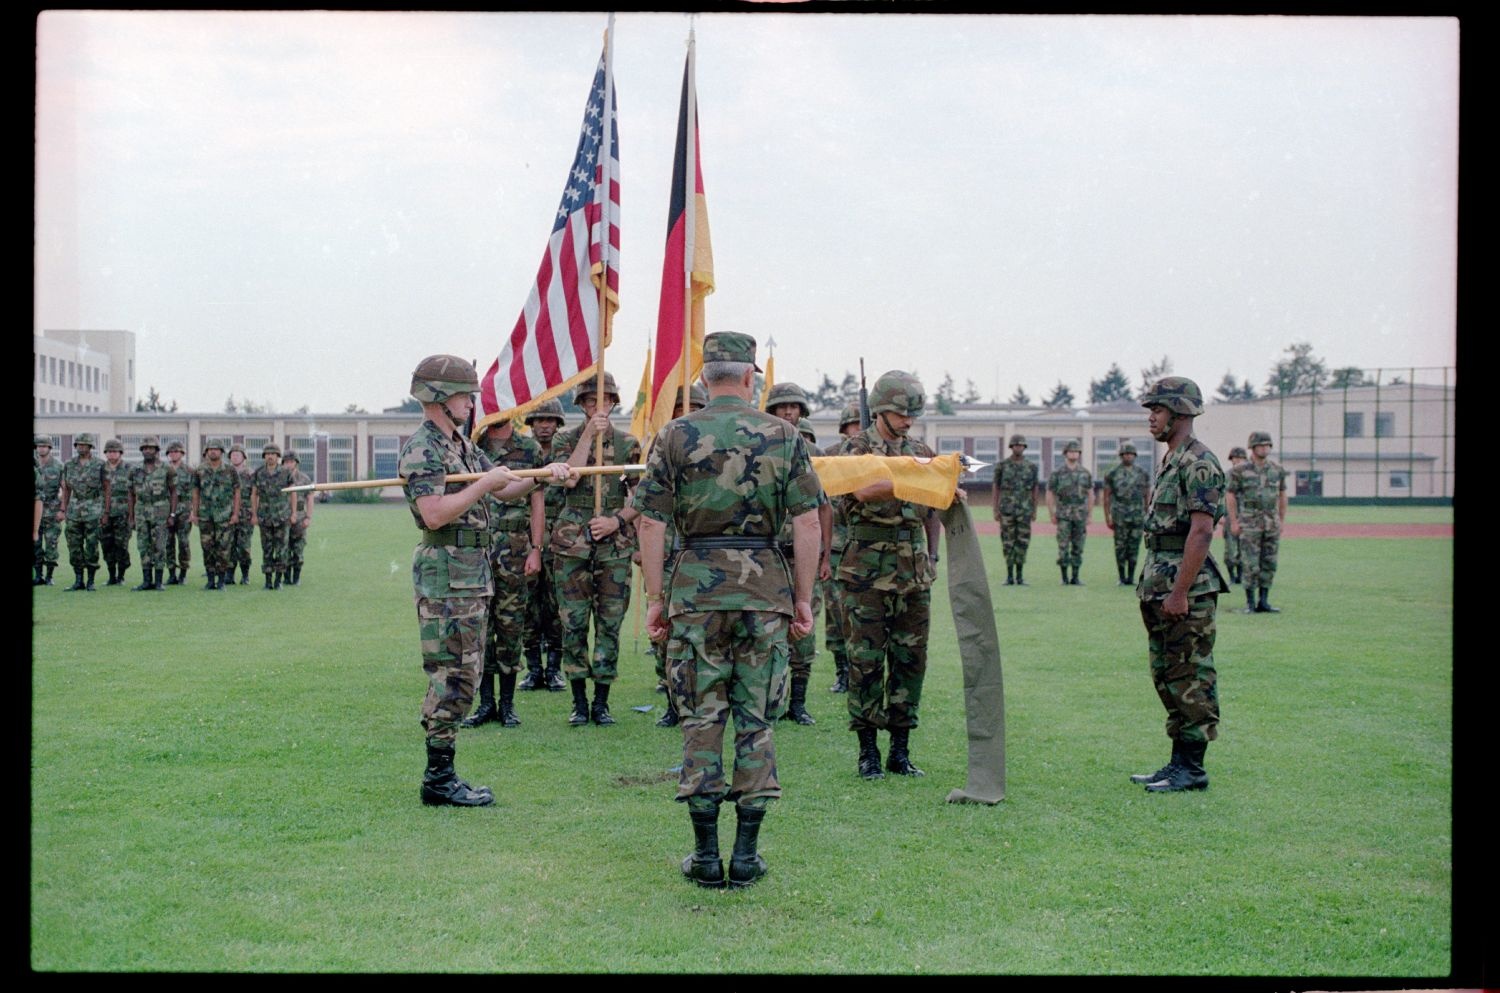 Fotografie: Einholung der Fahne des 40th Armor Regiment der U.S. Army Berlin in Berlin-Lichterfelde (AlliiertenMuseum/U.S. Army Photograph Public Domain Mark)